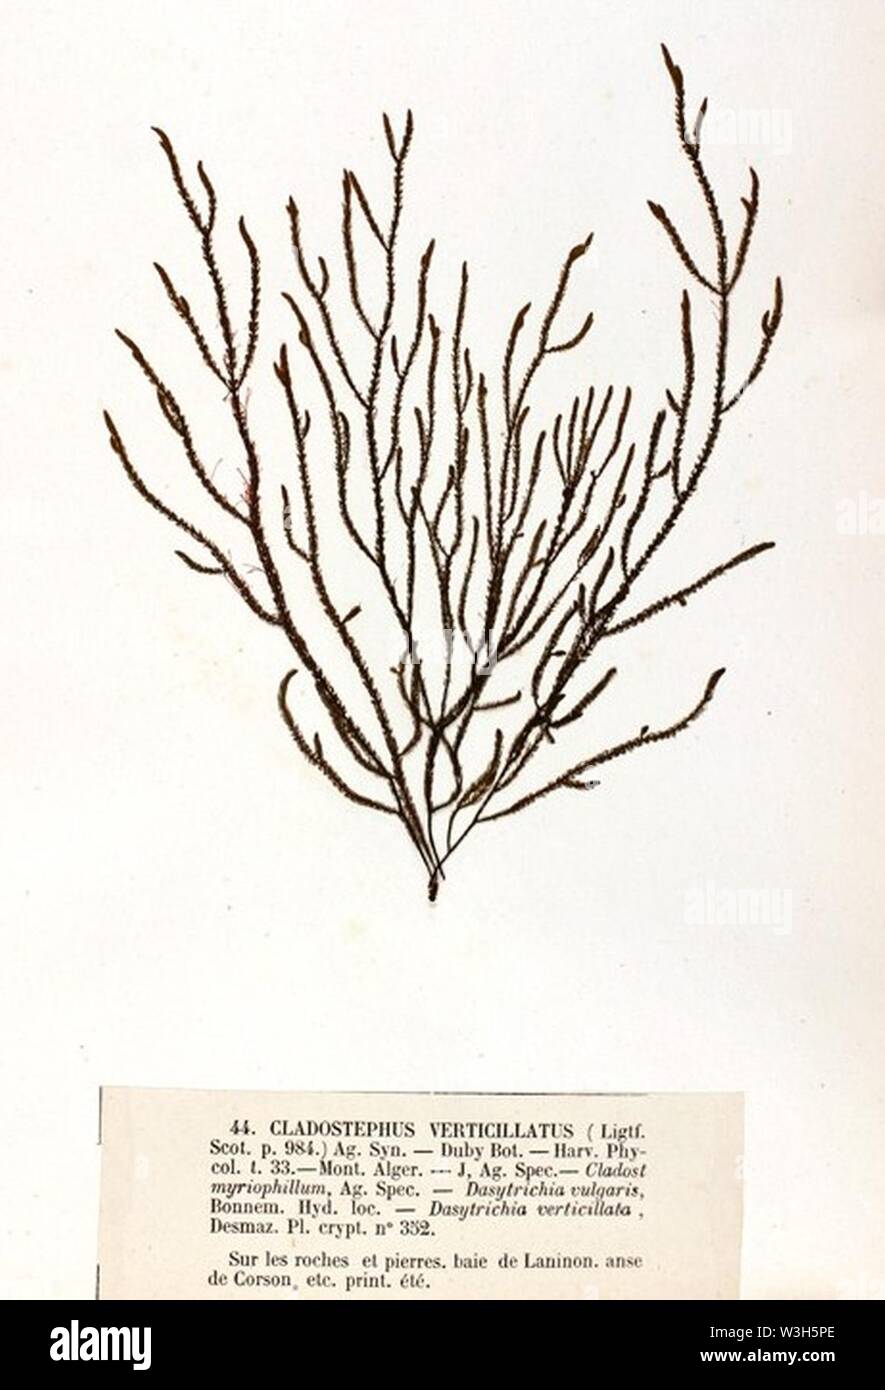 Cladostephus verticillatus Crouan (2). Stock Photo